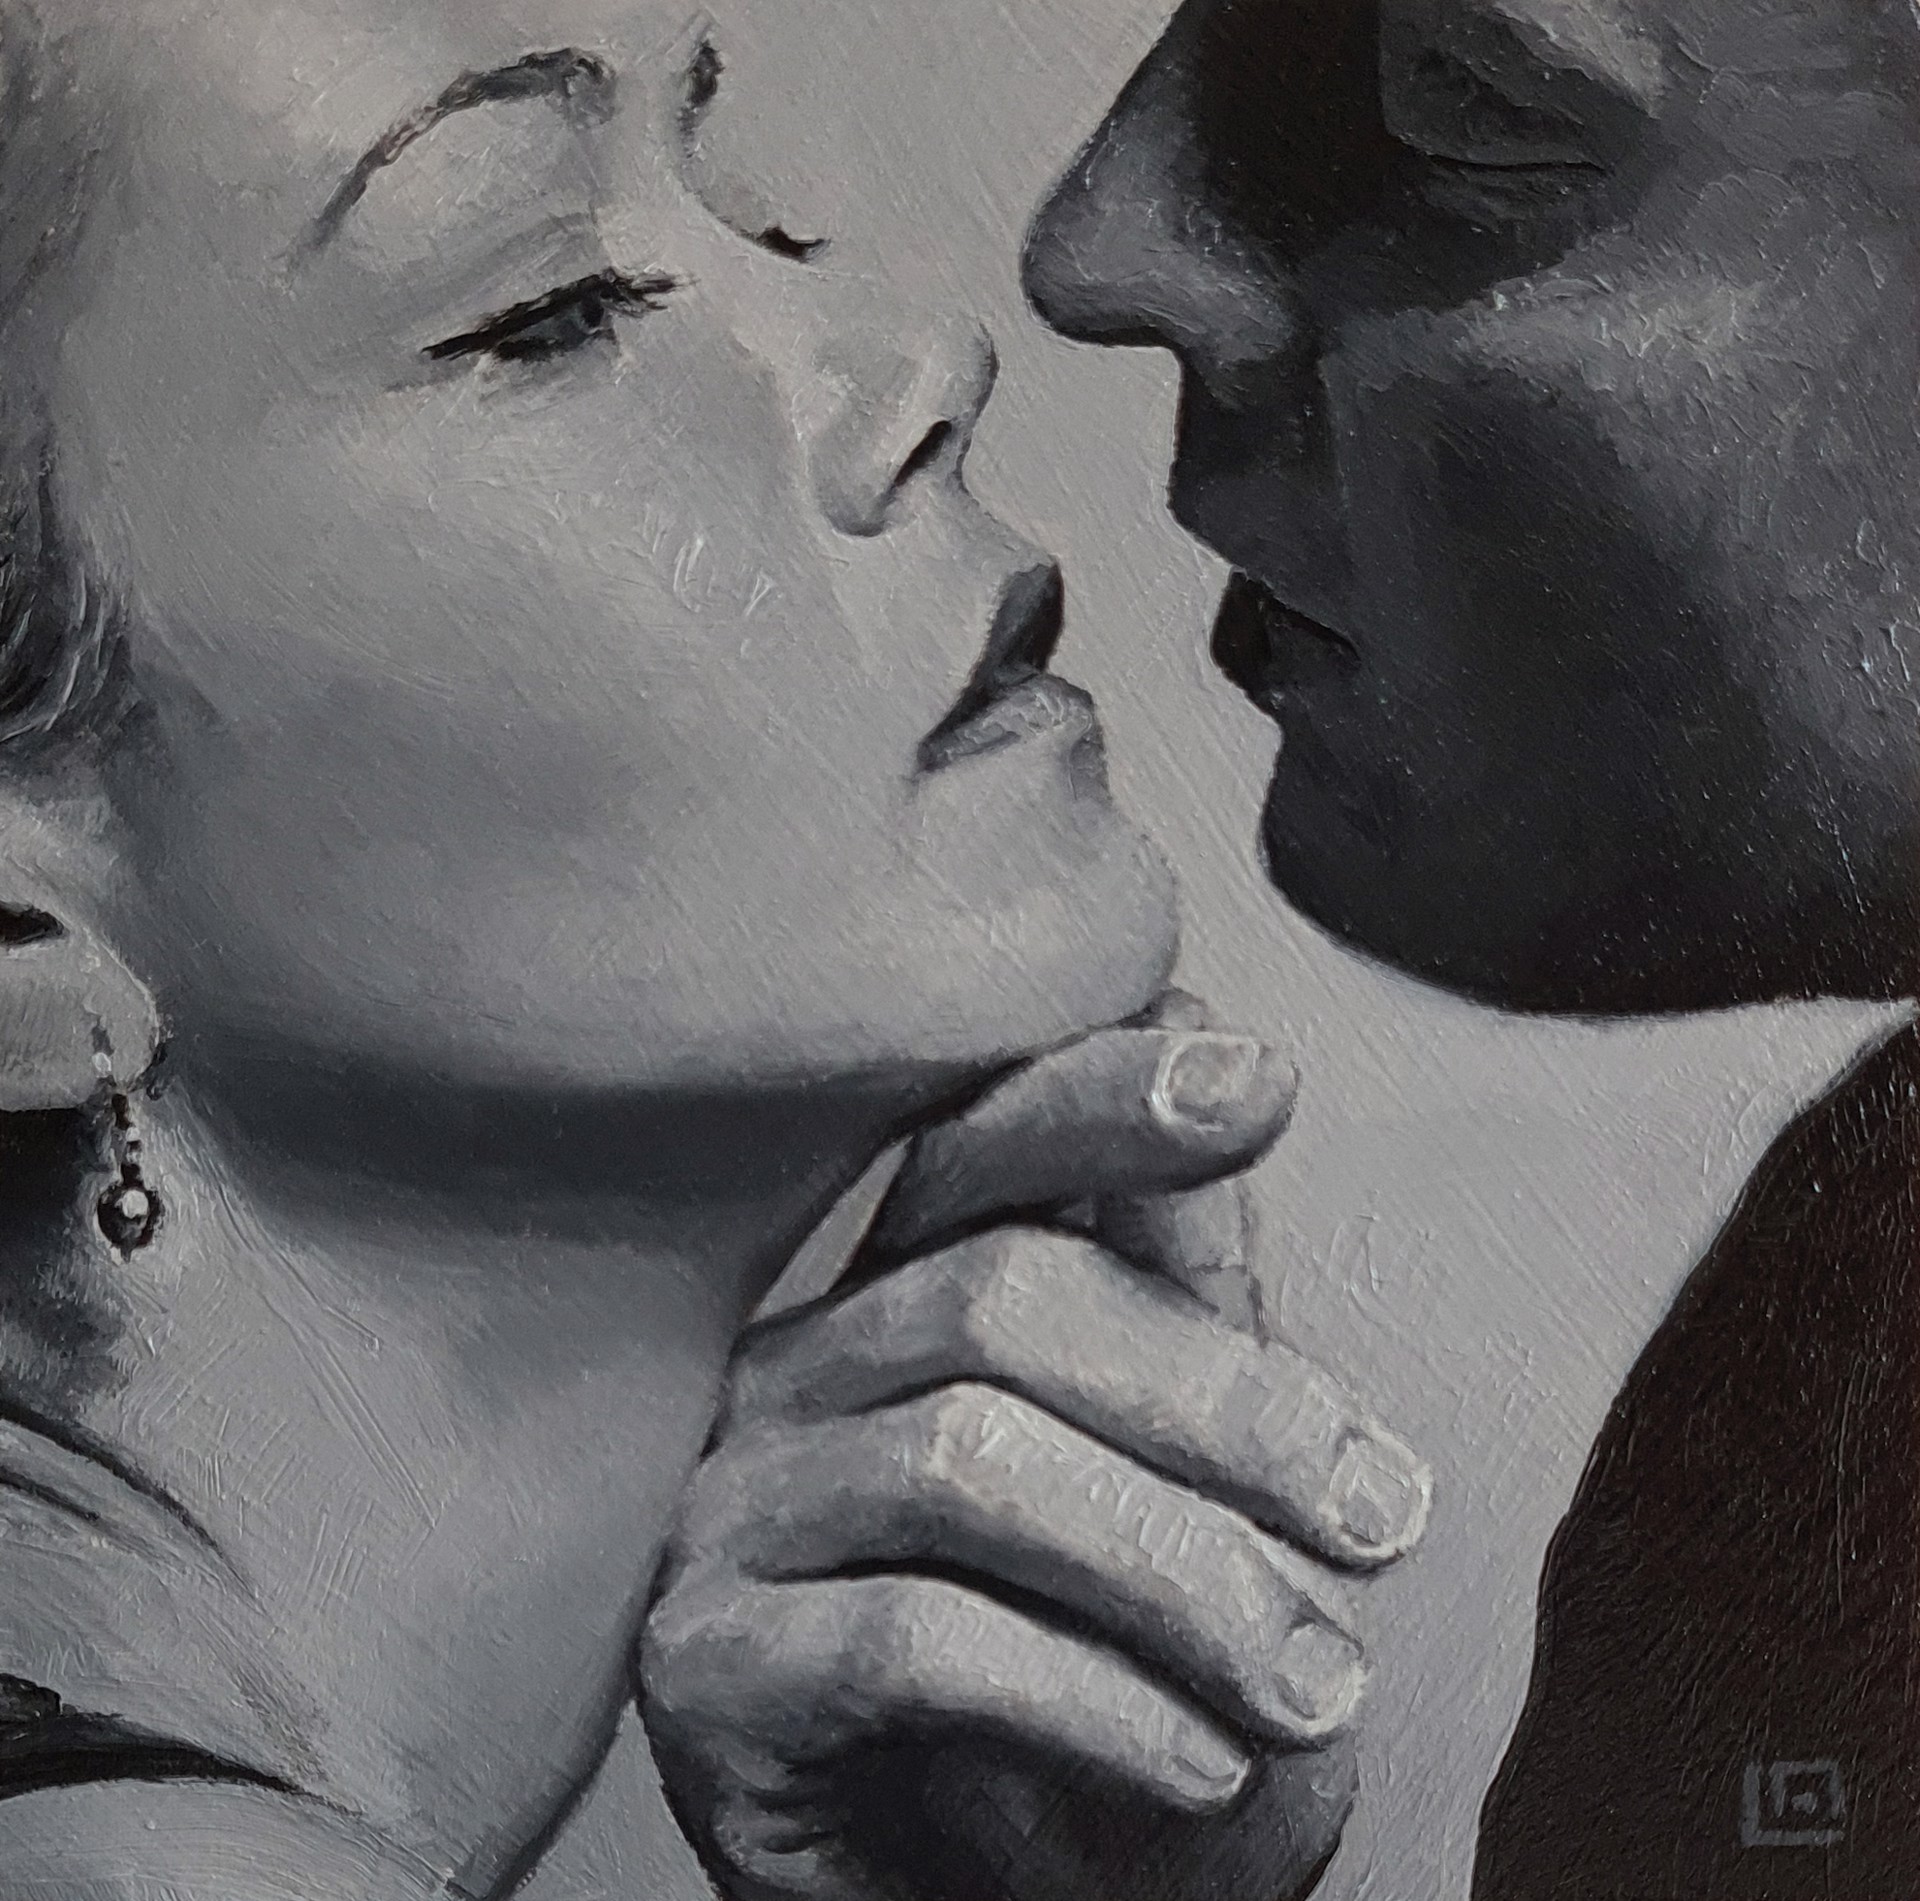 The Kiss #5 by Linda Adair